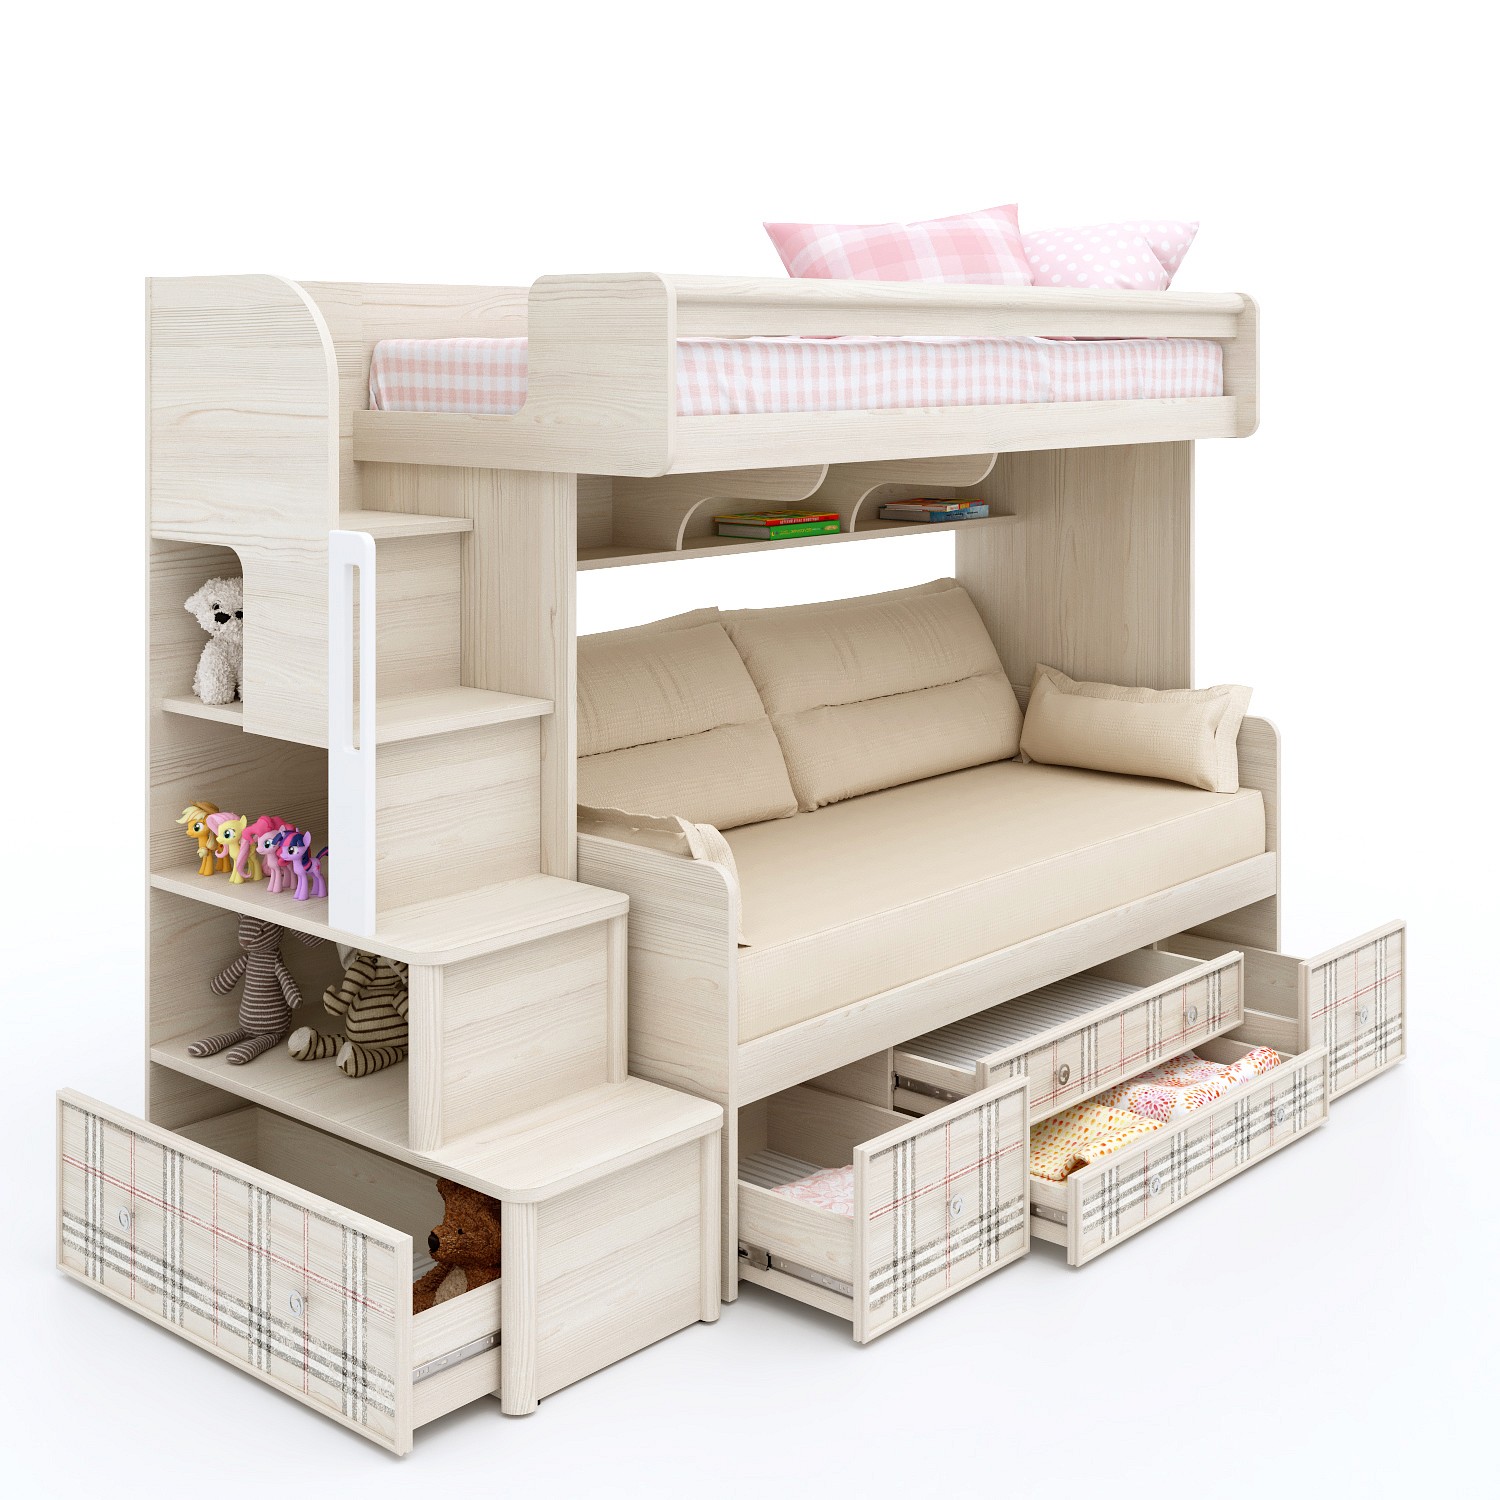 двухъярусная кровать с диваном для девочек